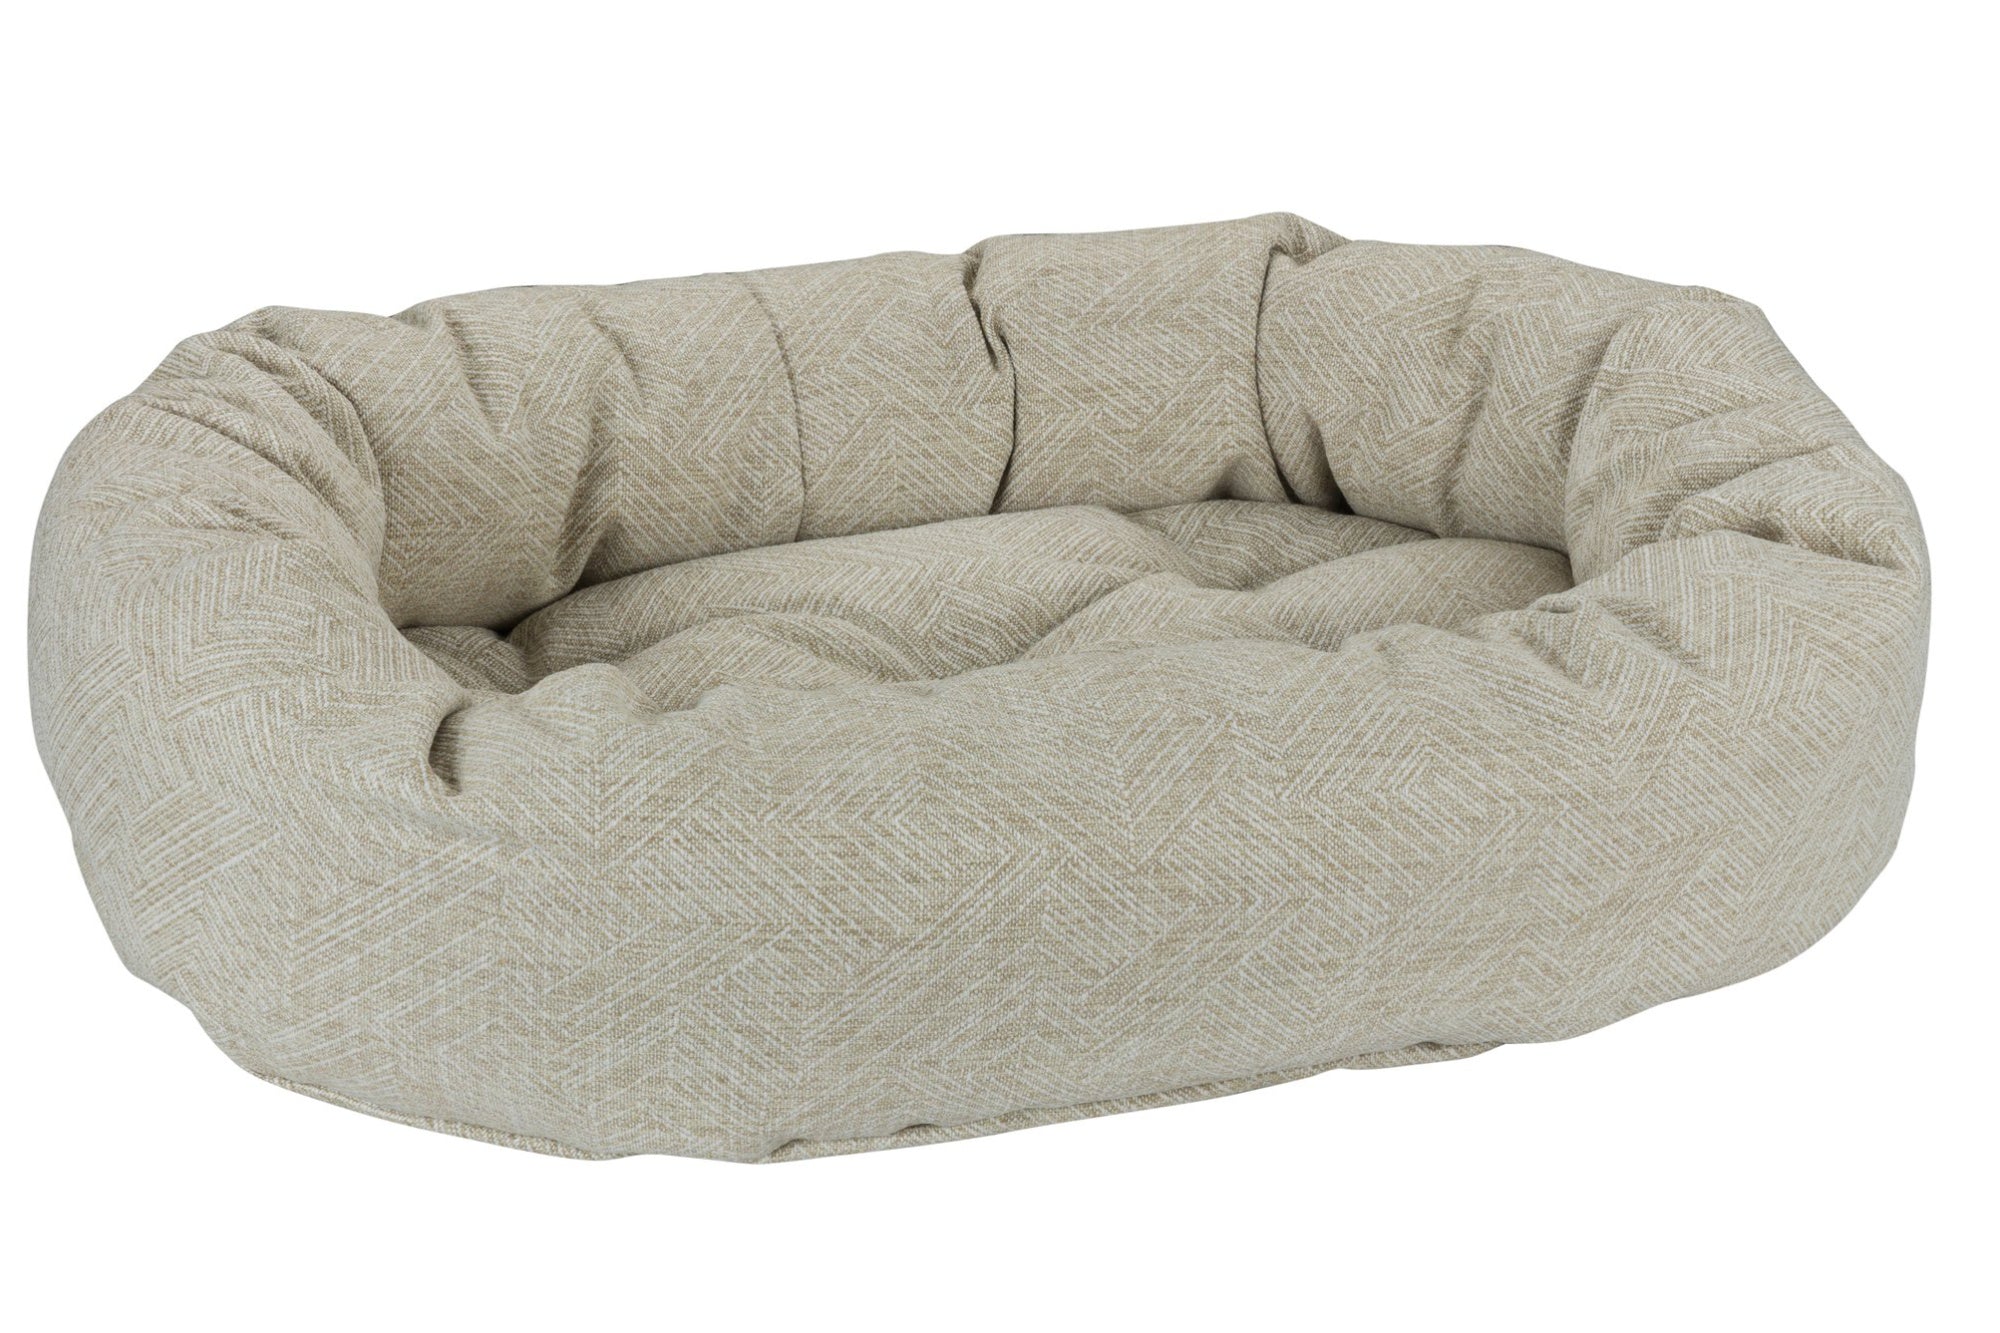 Microvelvet - Donut Bed - Natura - Dog Bed